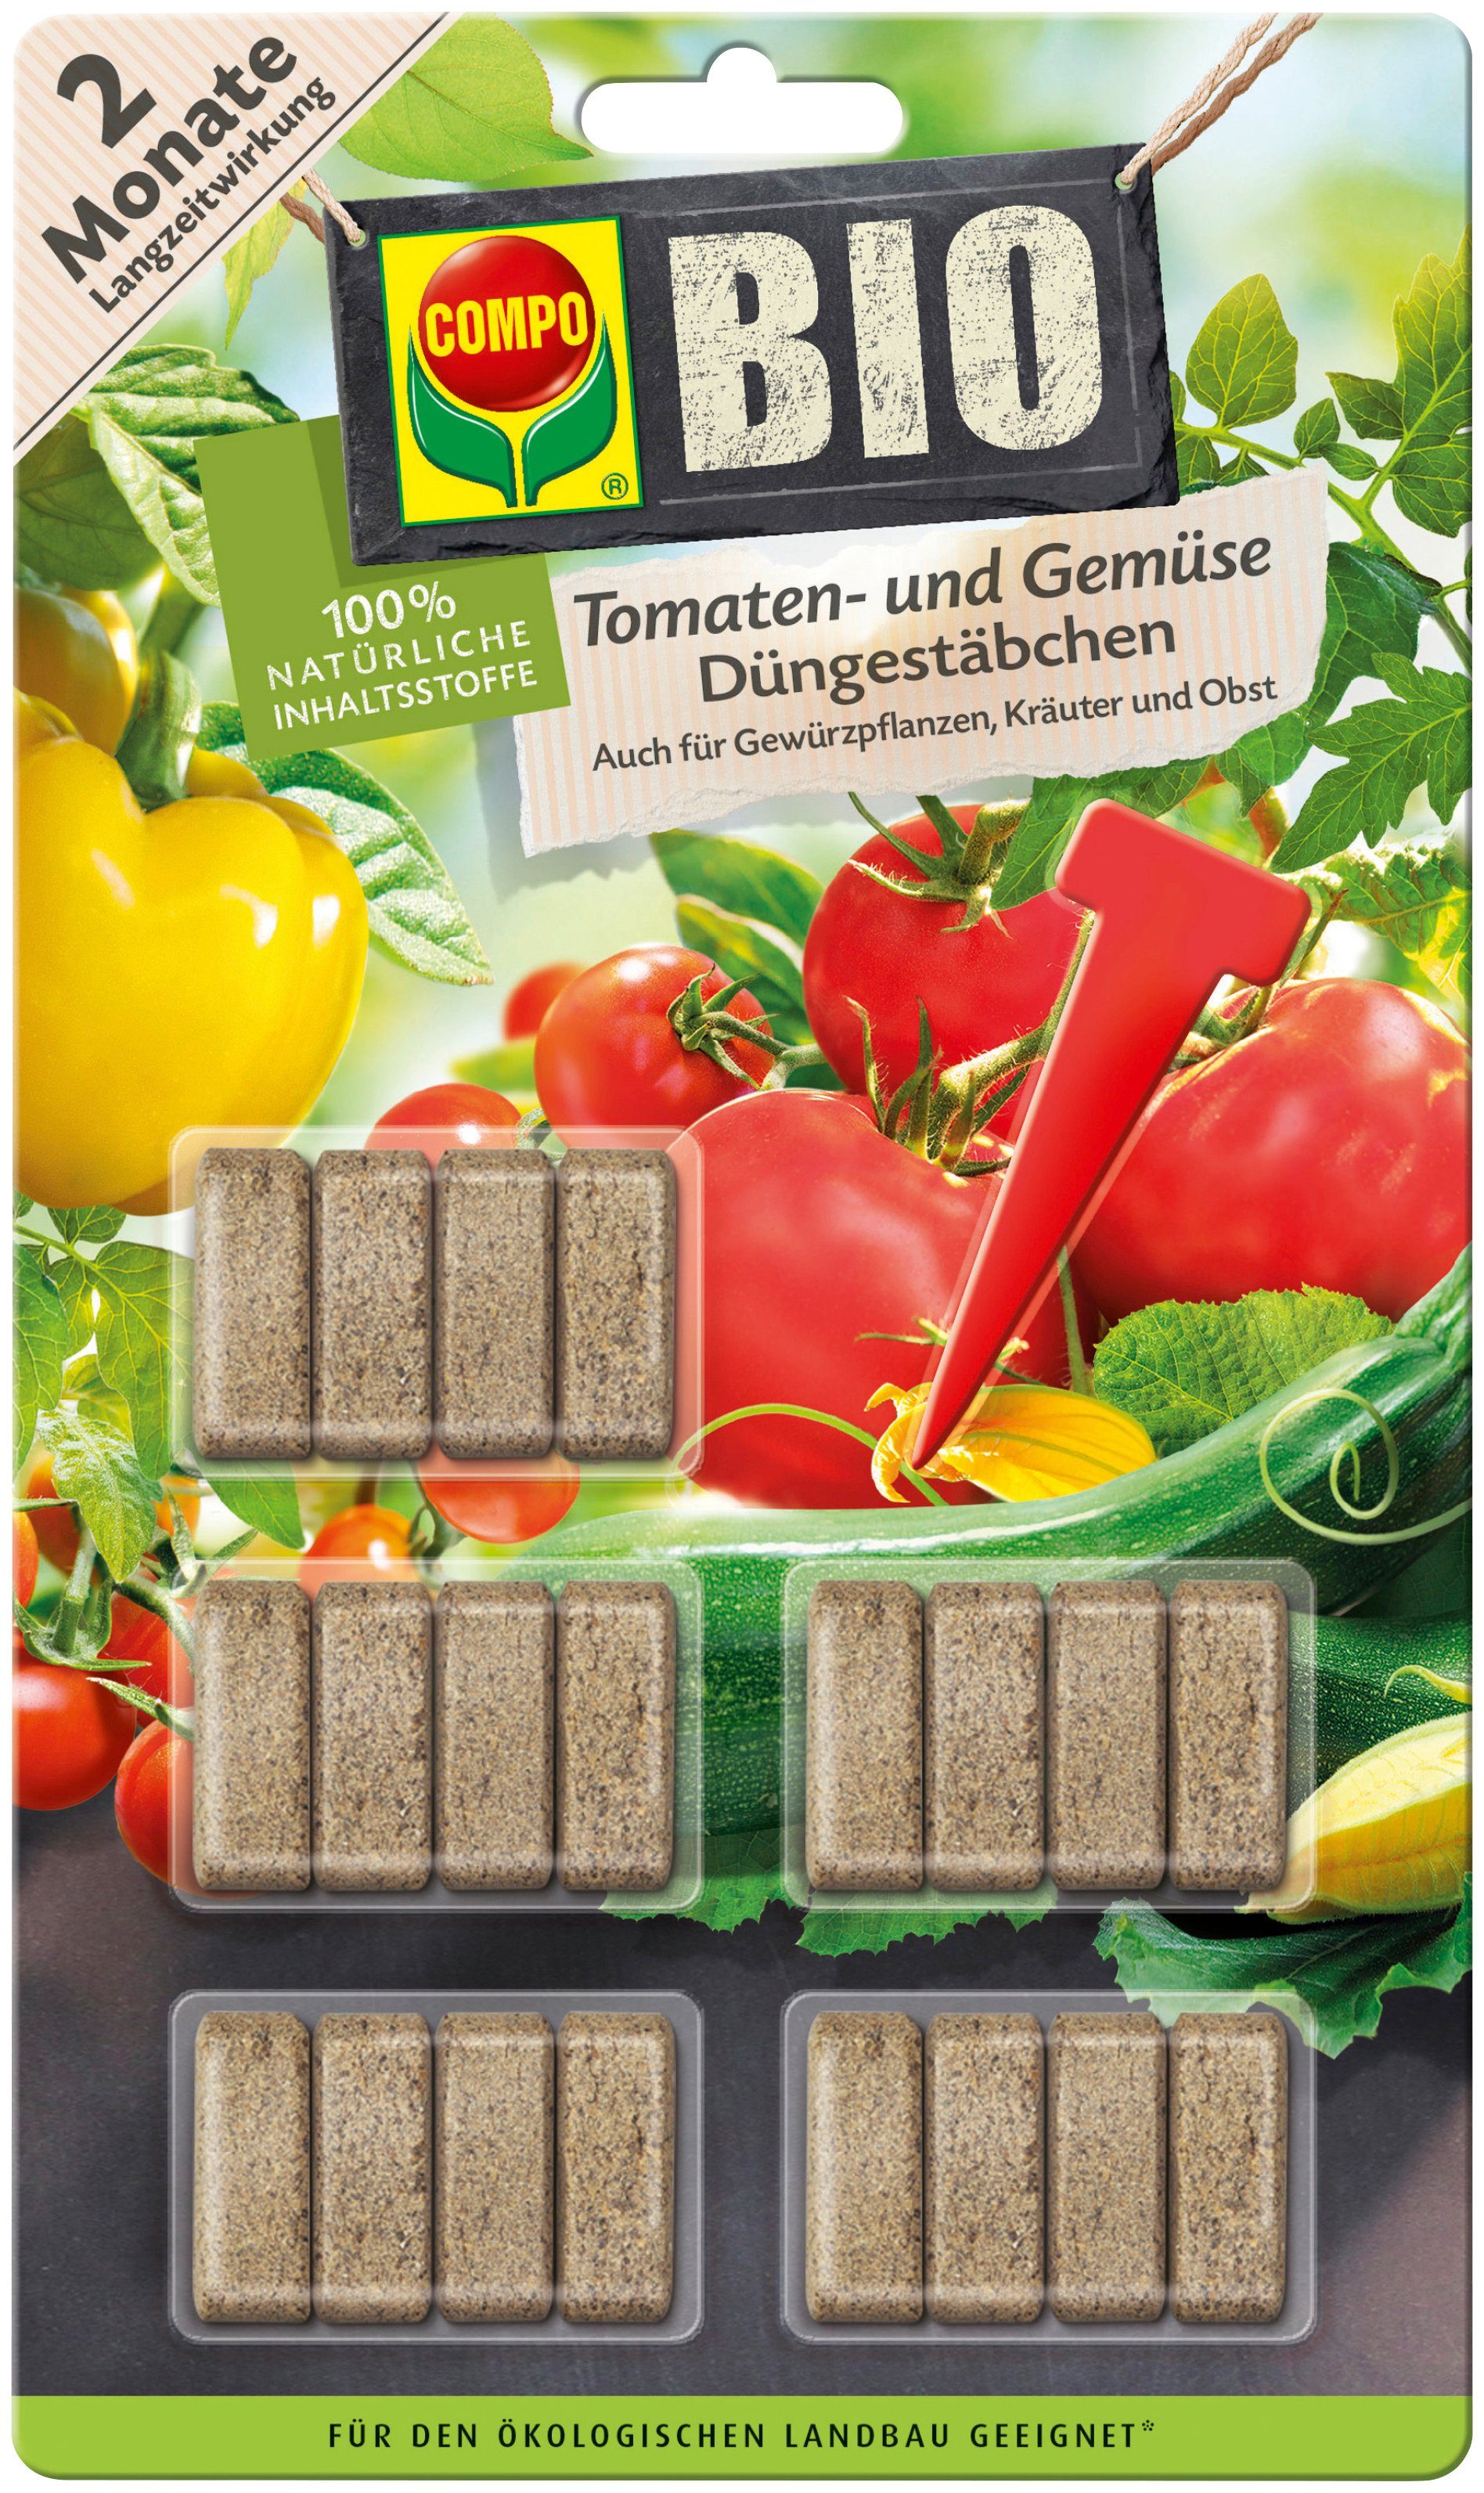 Compo Gemüsedünger COMPO BIO, Tomaten- und Gemüse Düngestäbchen, 20 Stück